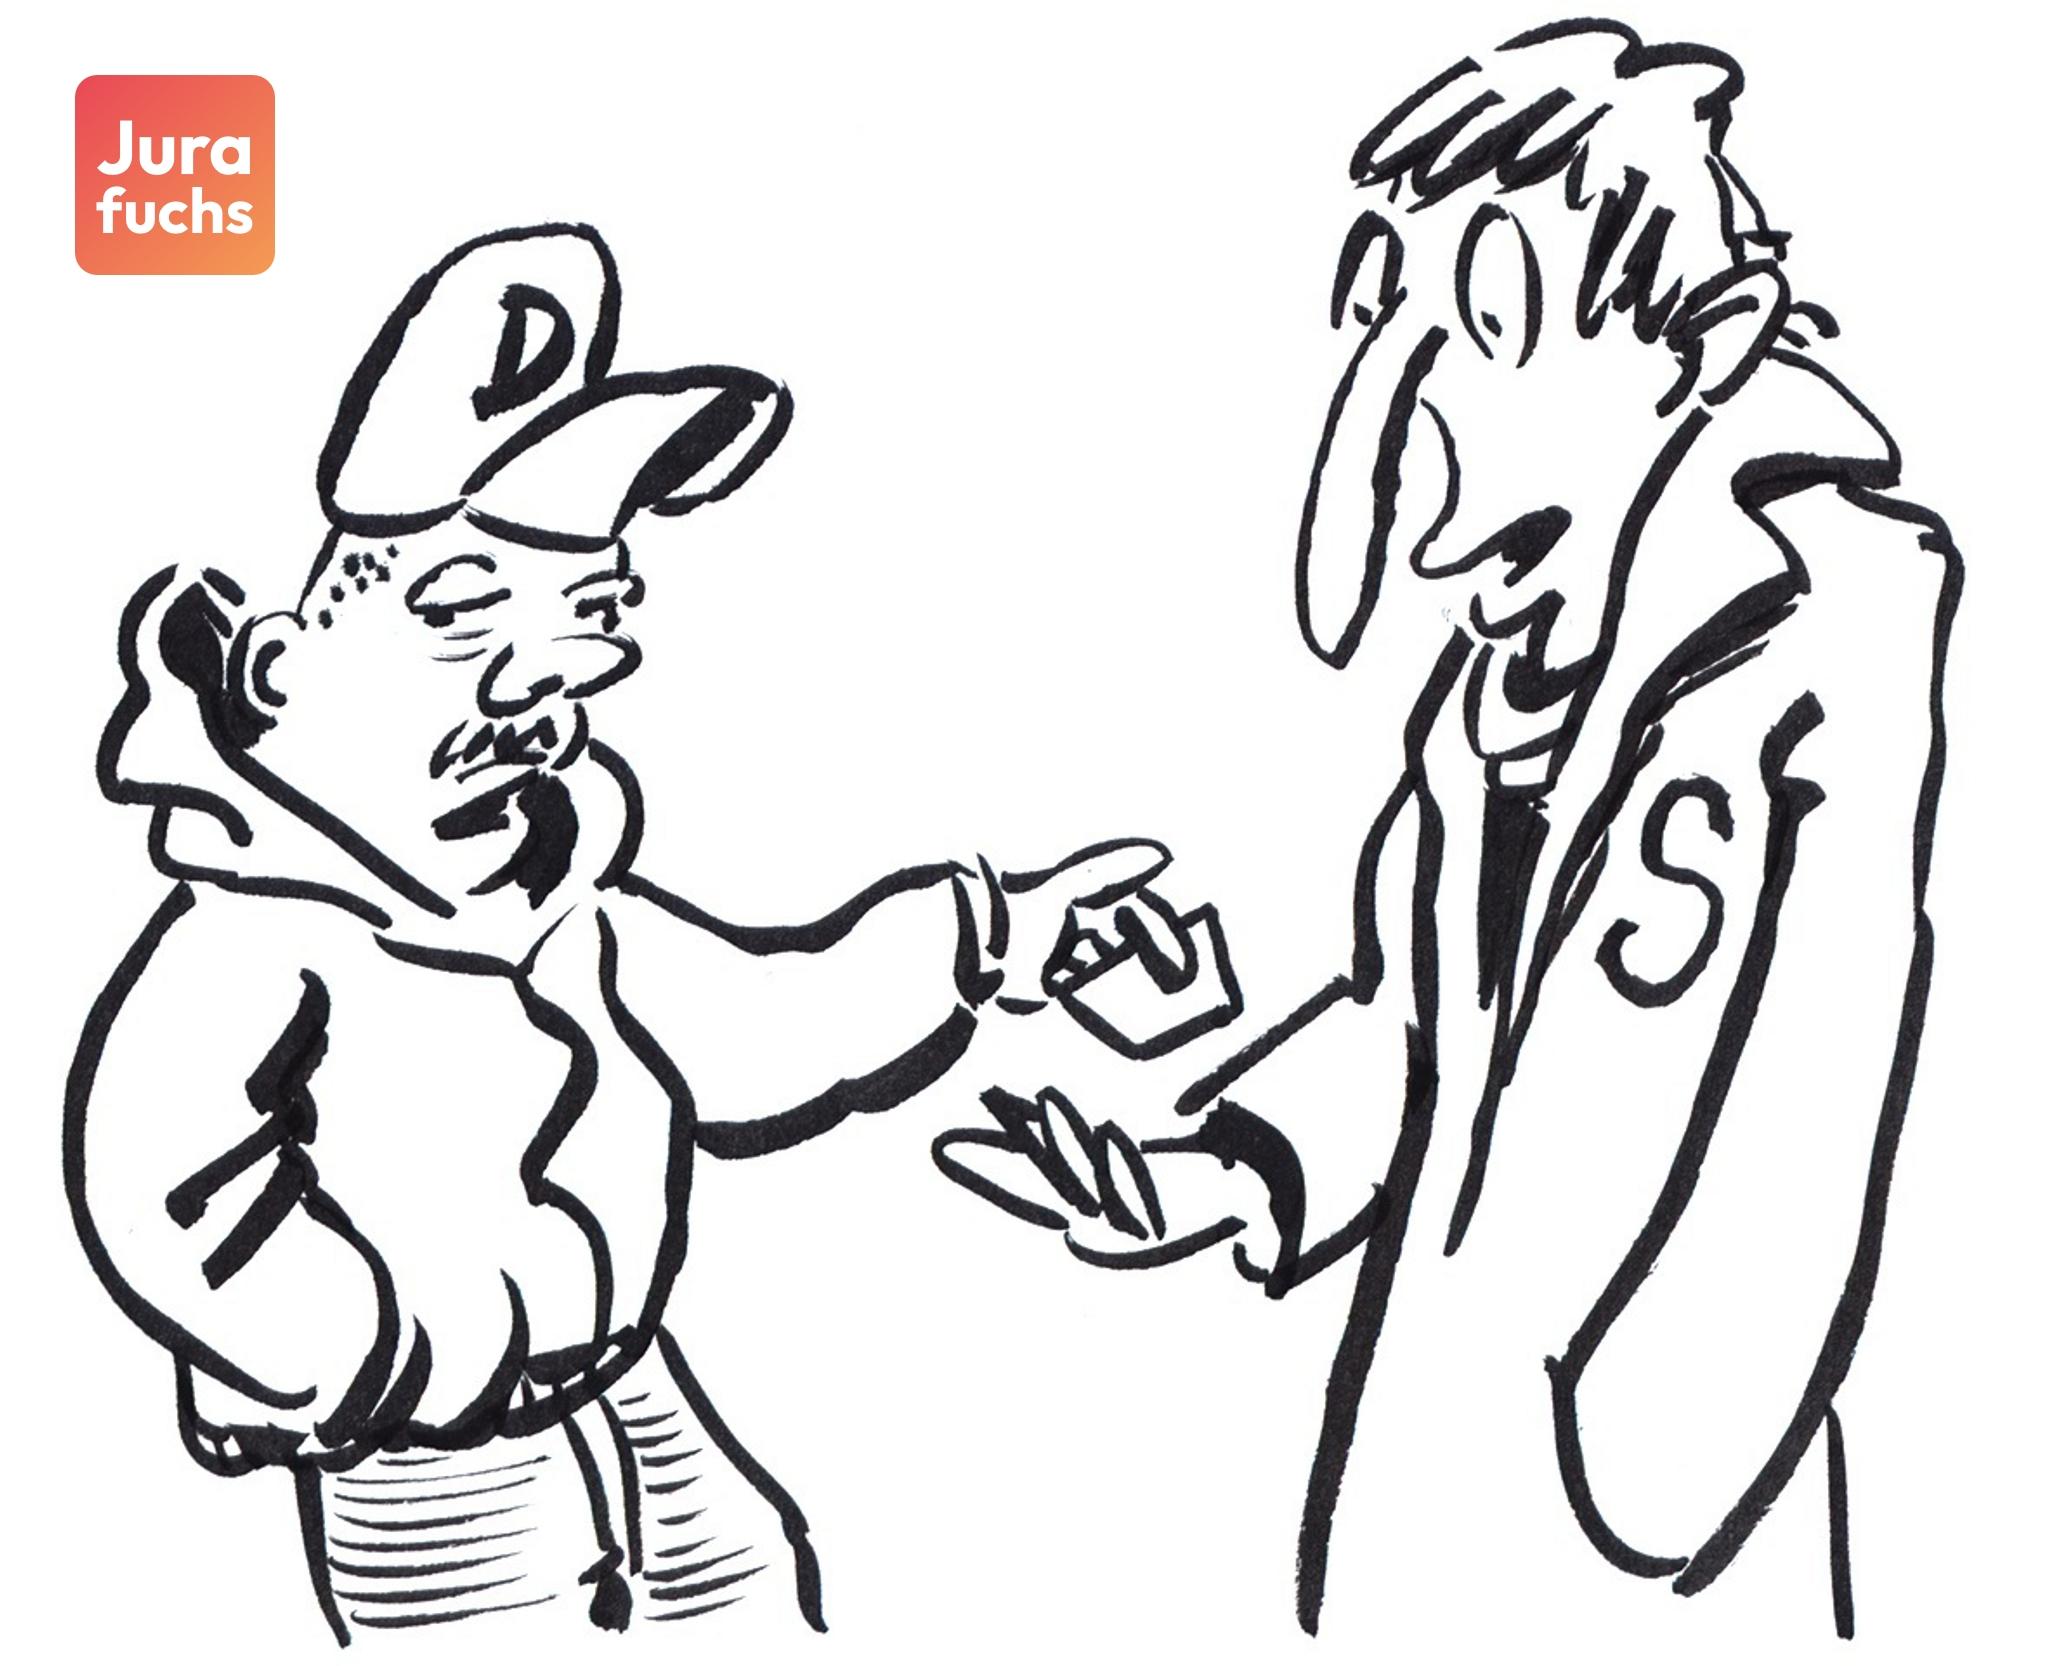 Jurafuchs Illustration: Dealer D gibt dem als Wissenschaftler verkleideten D eine Amphetamin-Tablette. 